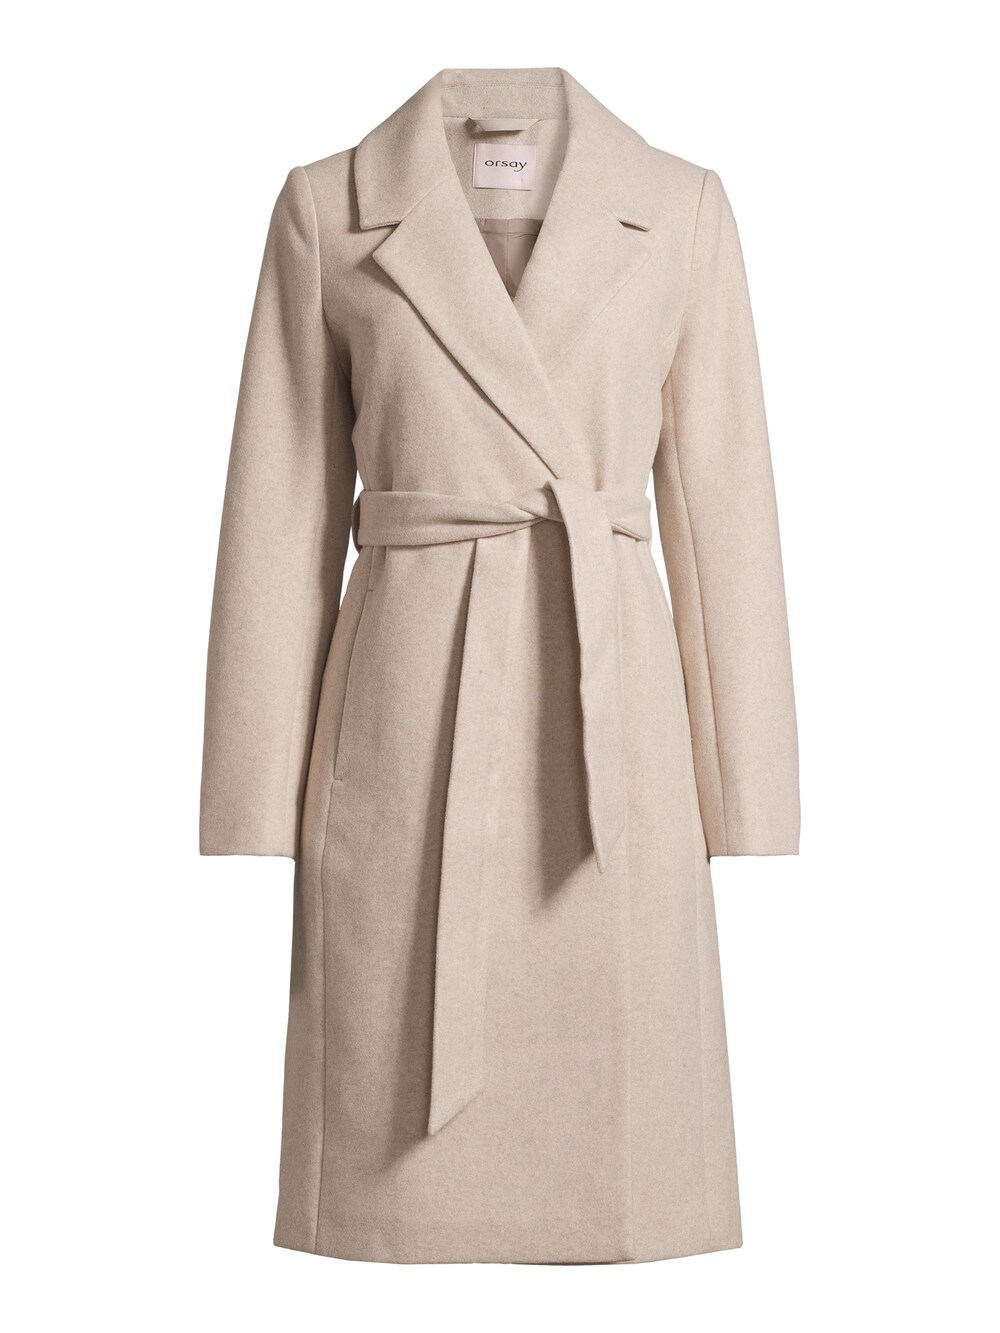 Межсезонное пальто Orsay Haley, бежевый межсезонное пальто orsay светло серый